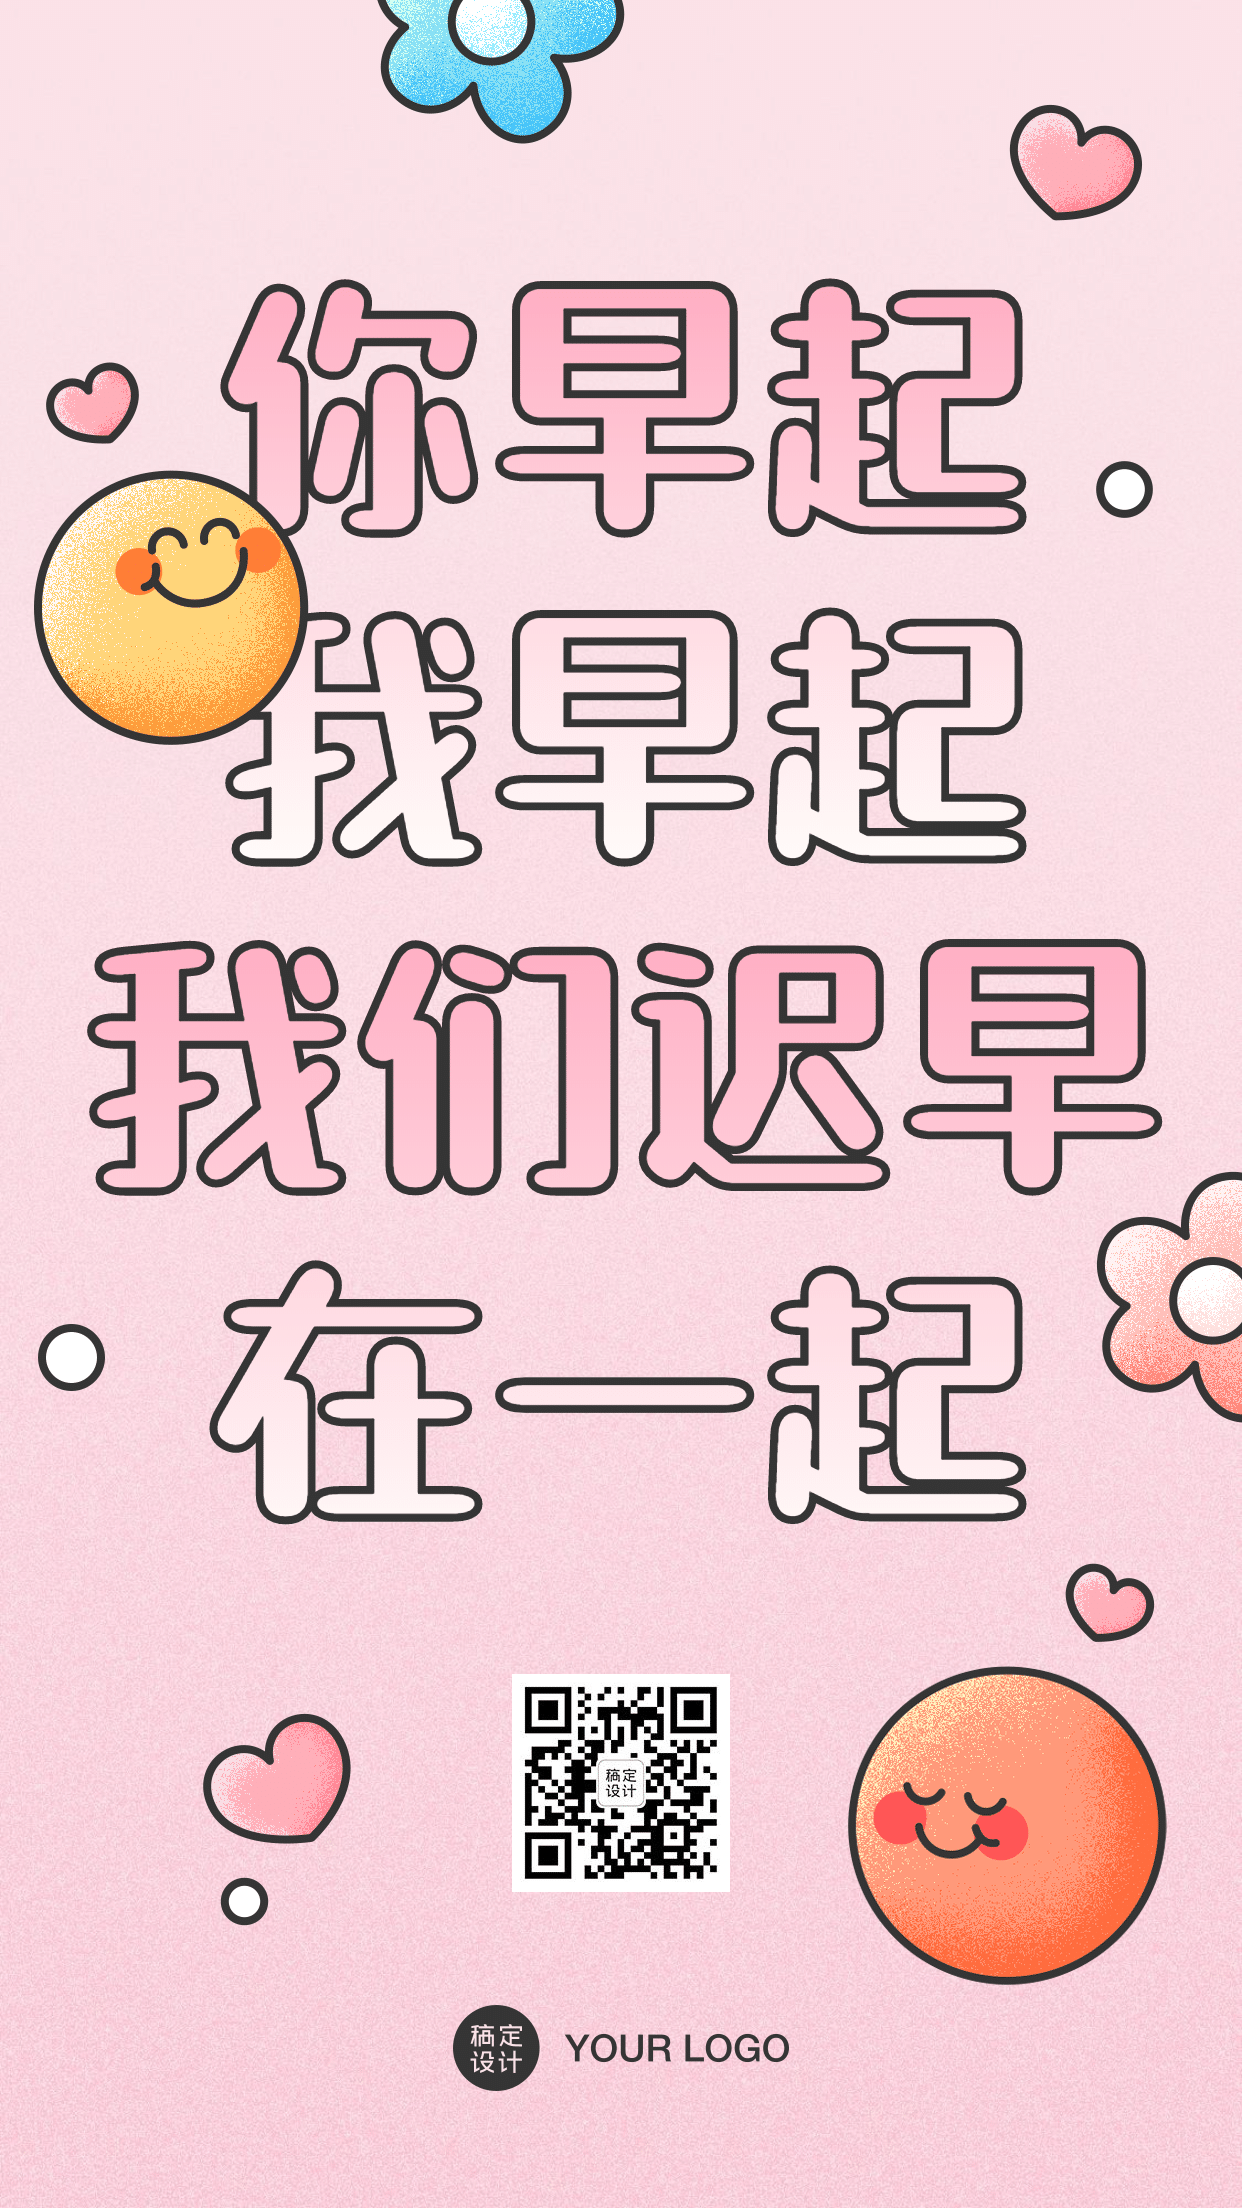 七夕情人节土味情话手机海报_图片模板素材-稿定设计